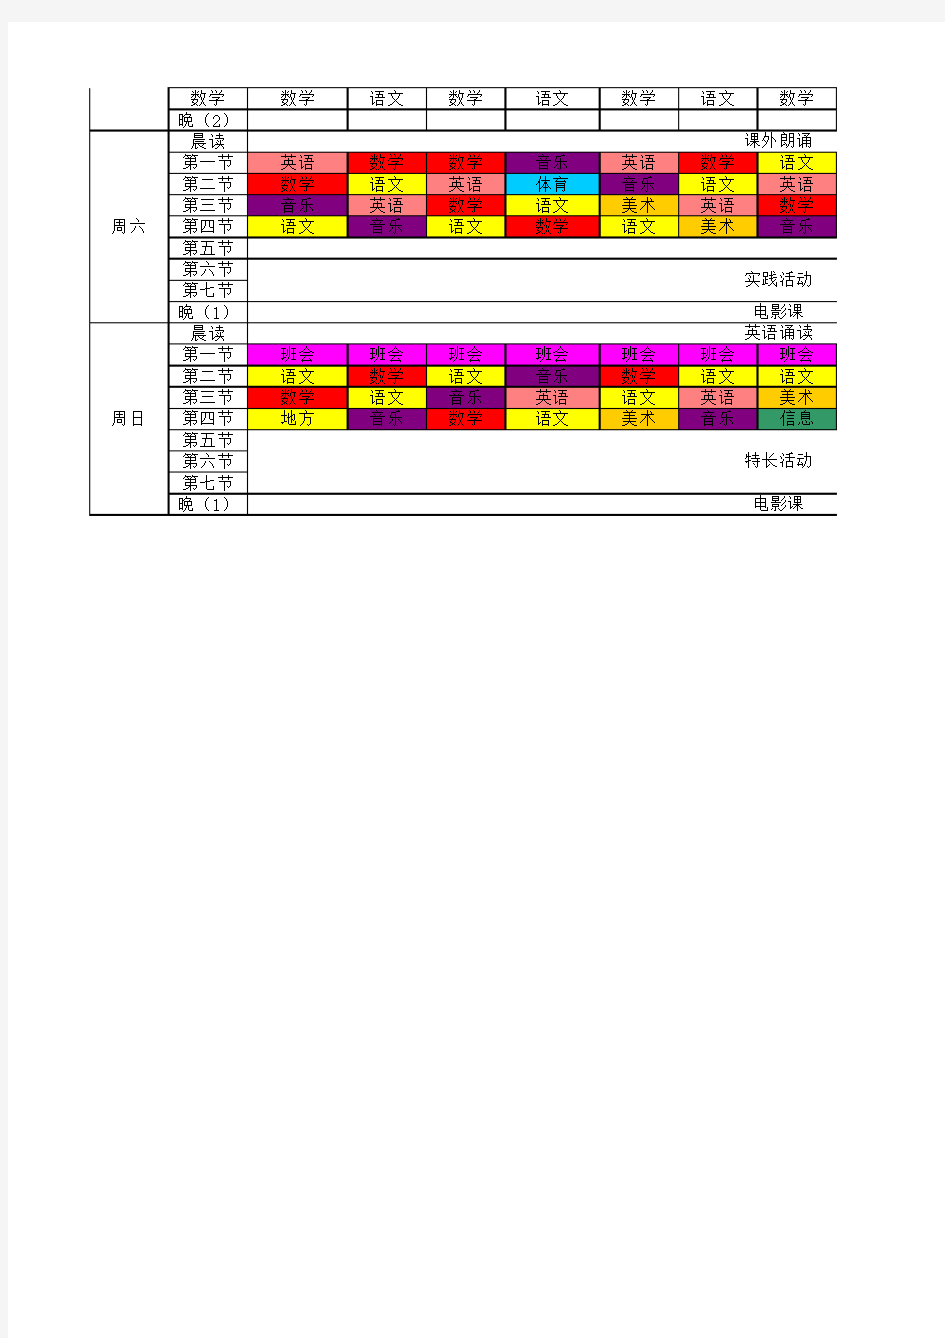 2013年小学段9月17日新课程表(2)